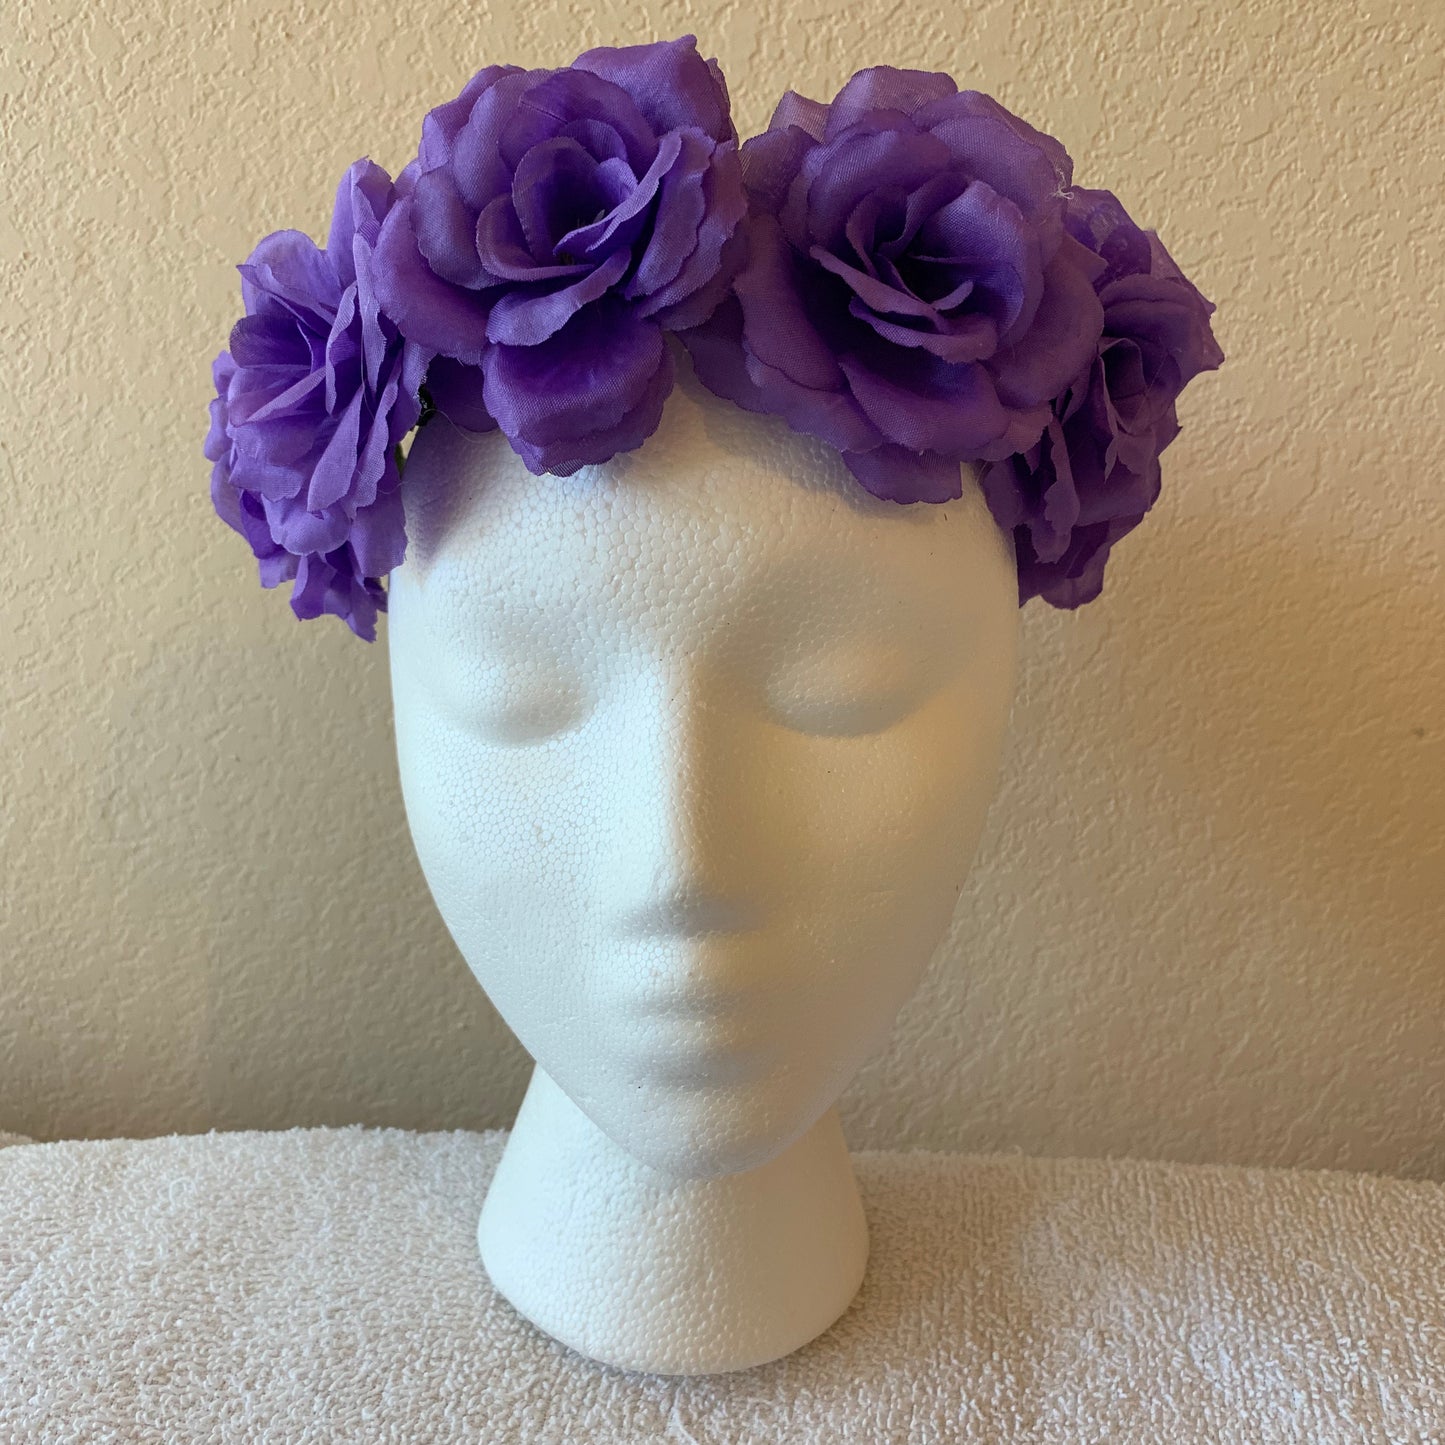 Medium Wreath -Purple roses